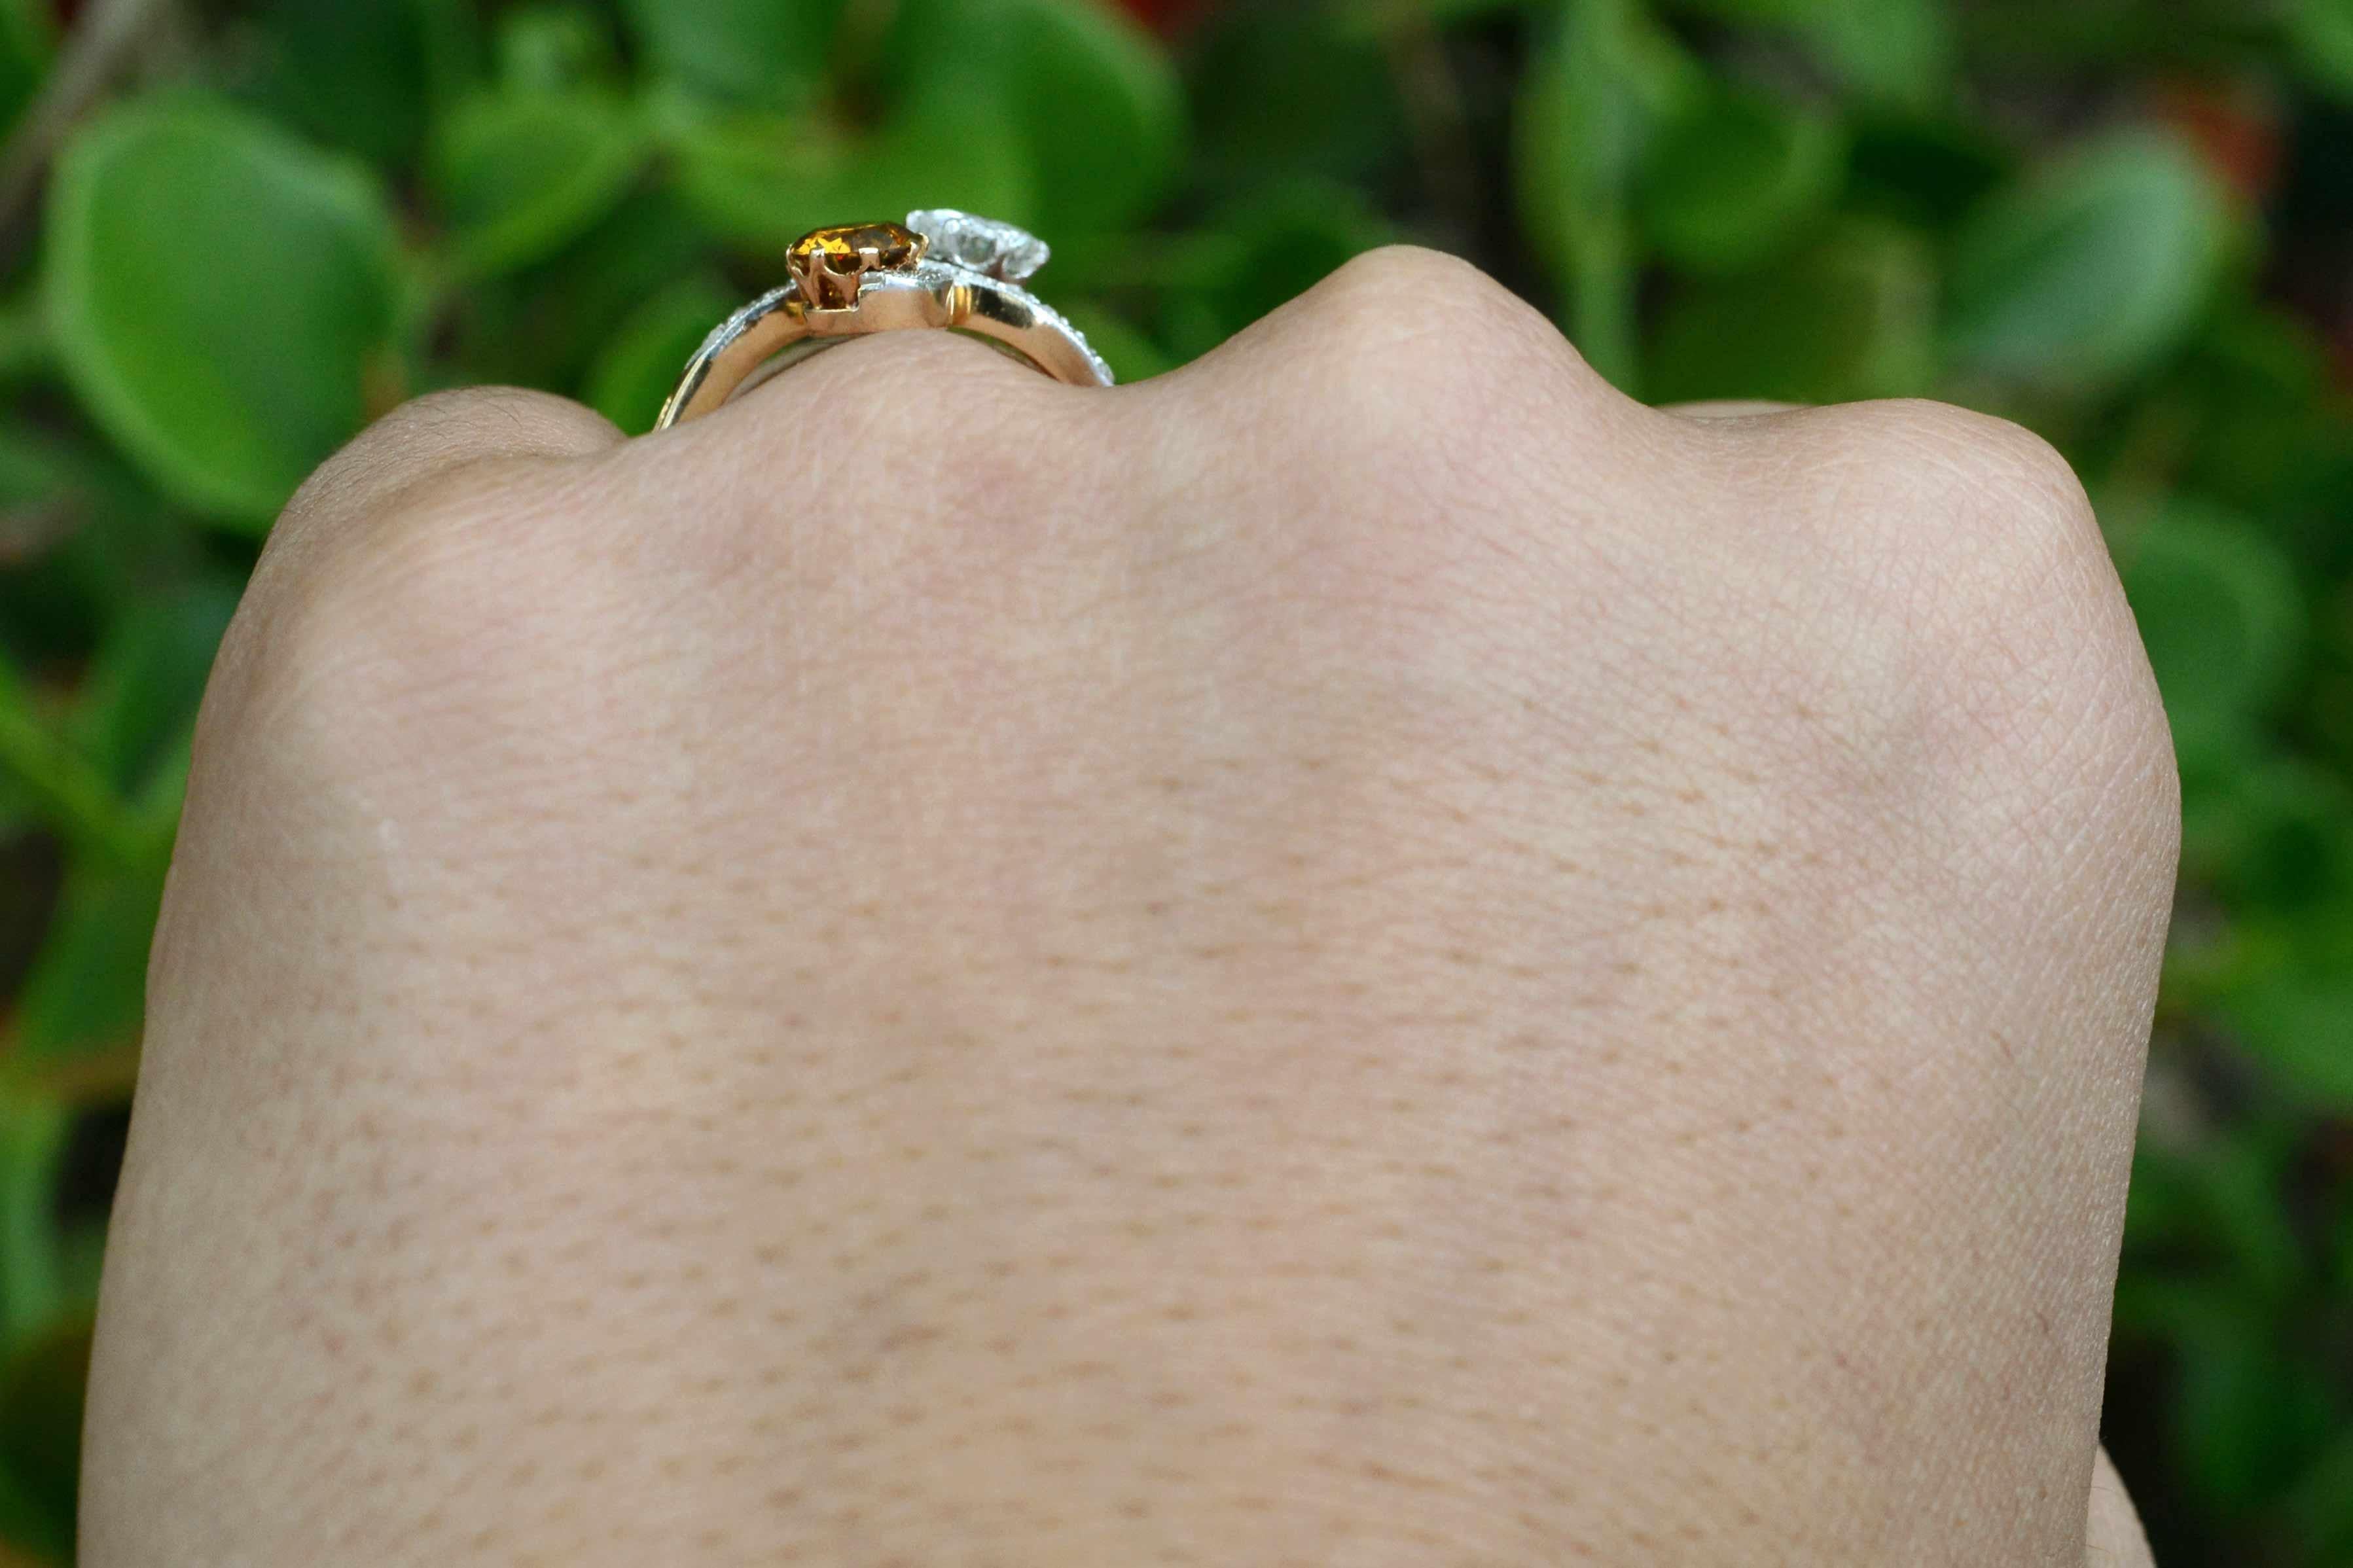 antique fancy color diamond engagement ring